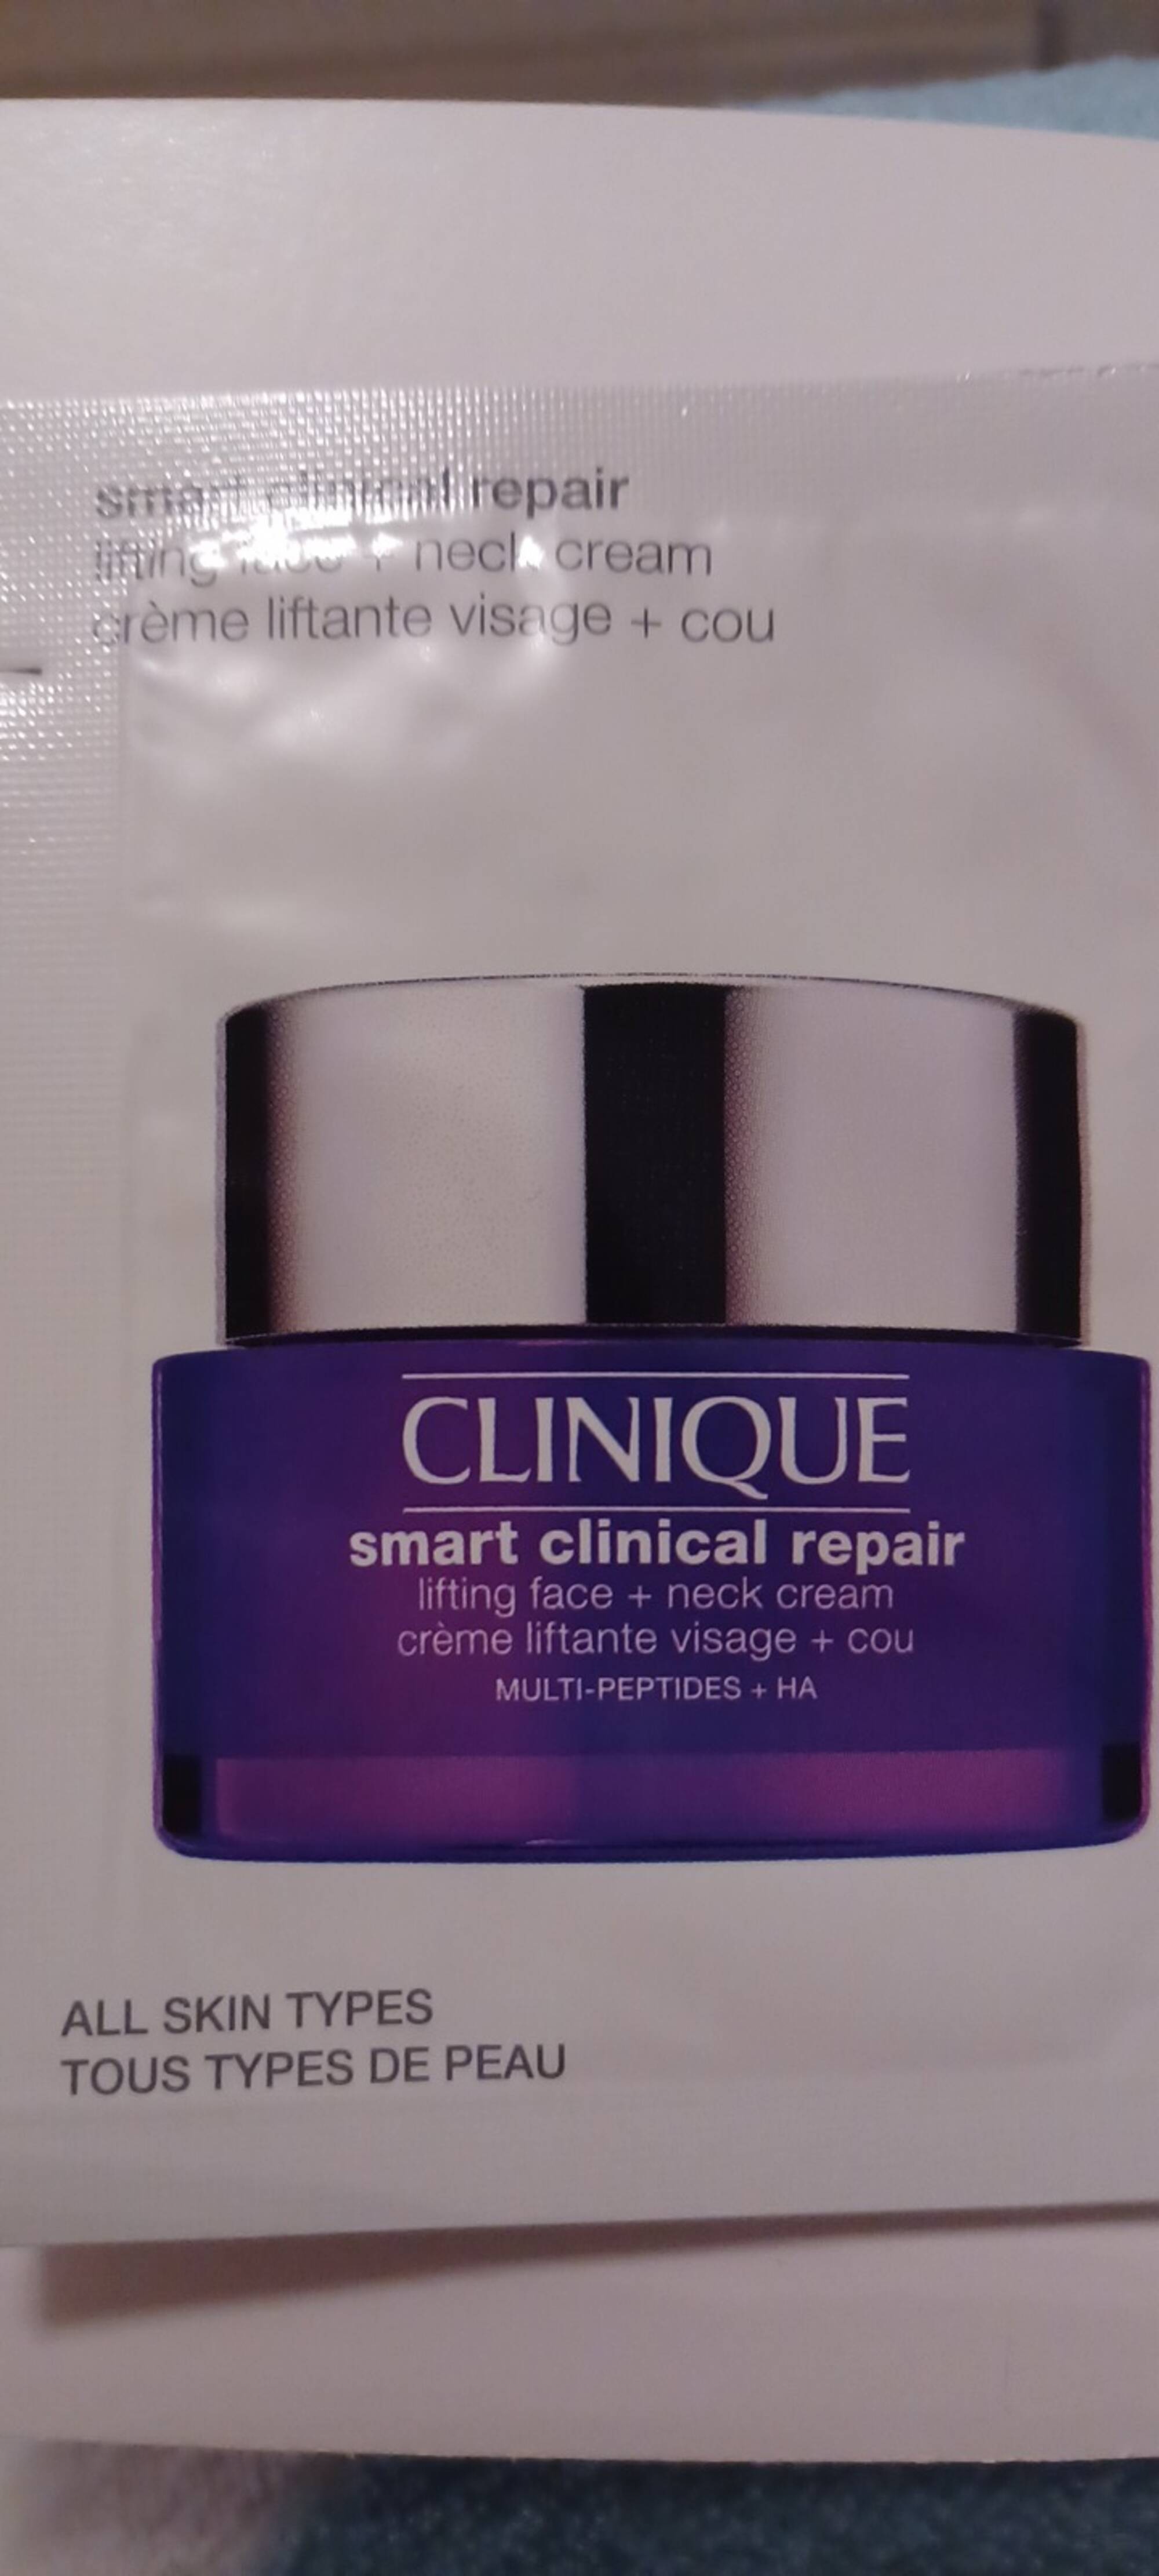 CLINIQUE - Smart clinical repair - Crème liftante visage + cou